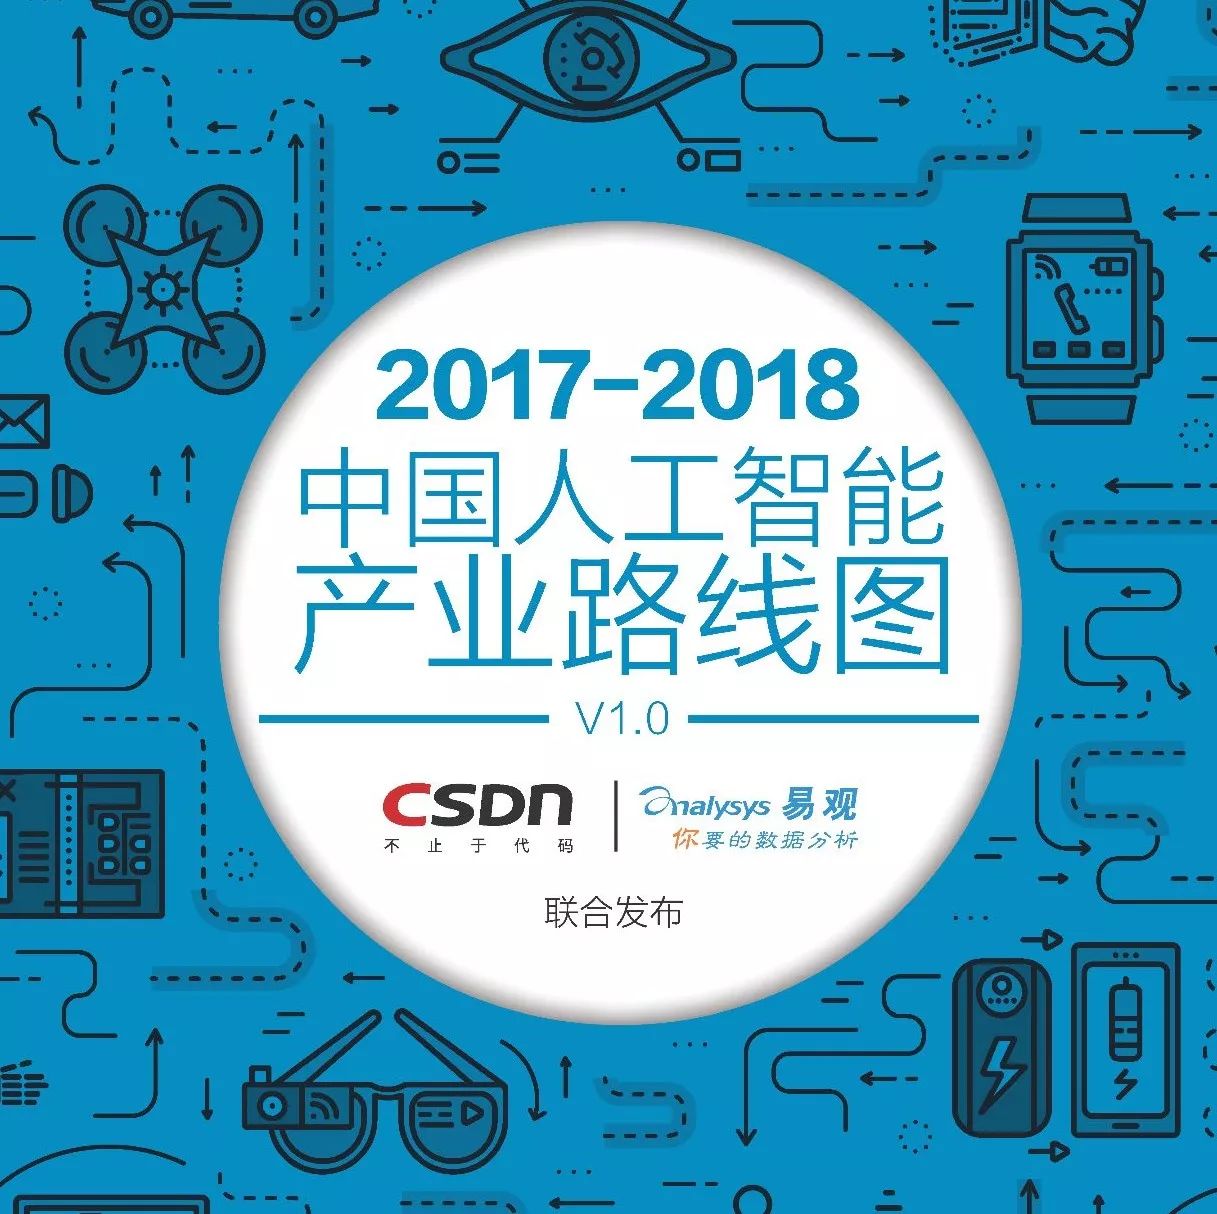 【分享】2017-2018中国人工智能产业路线图